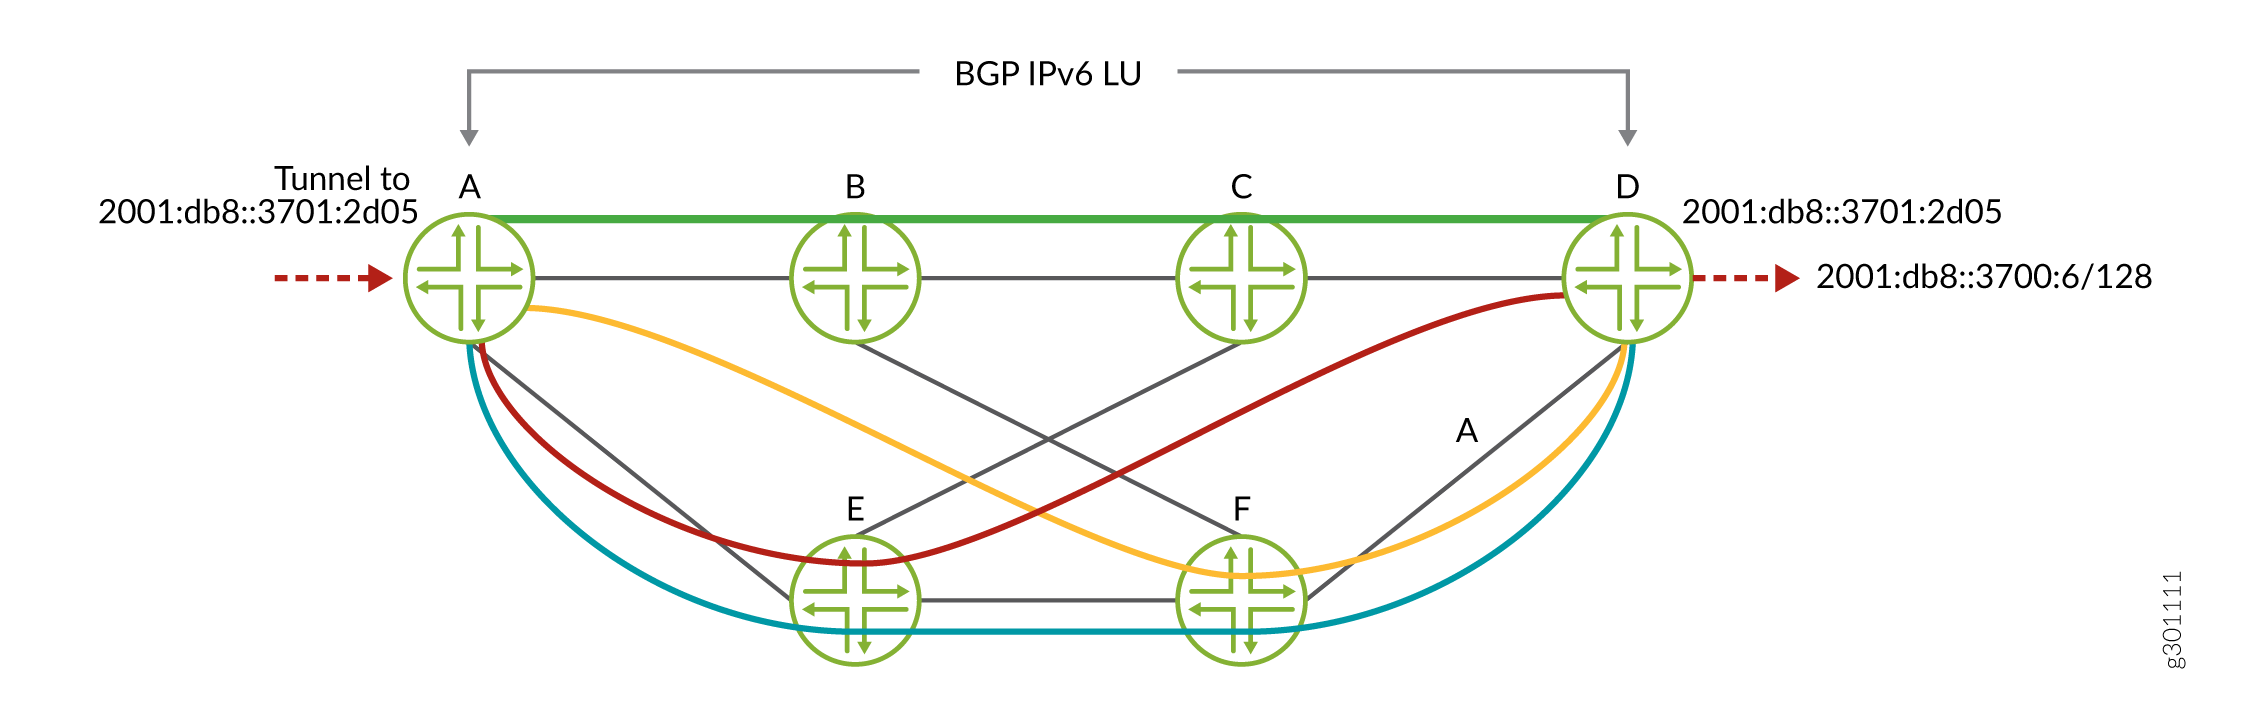 色付き IPv6 SR-TE 上の BGP IPv6 LU